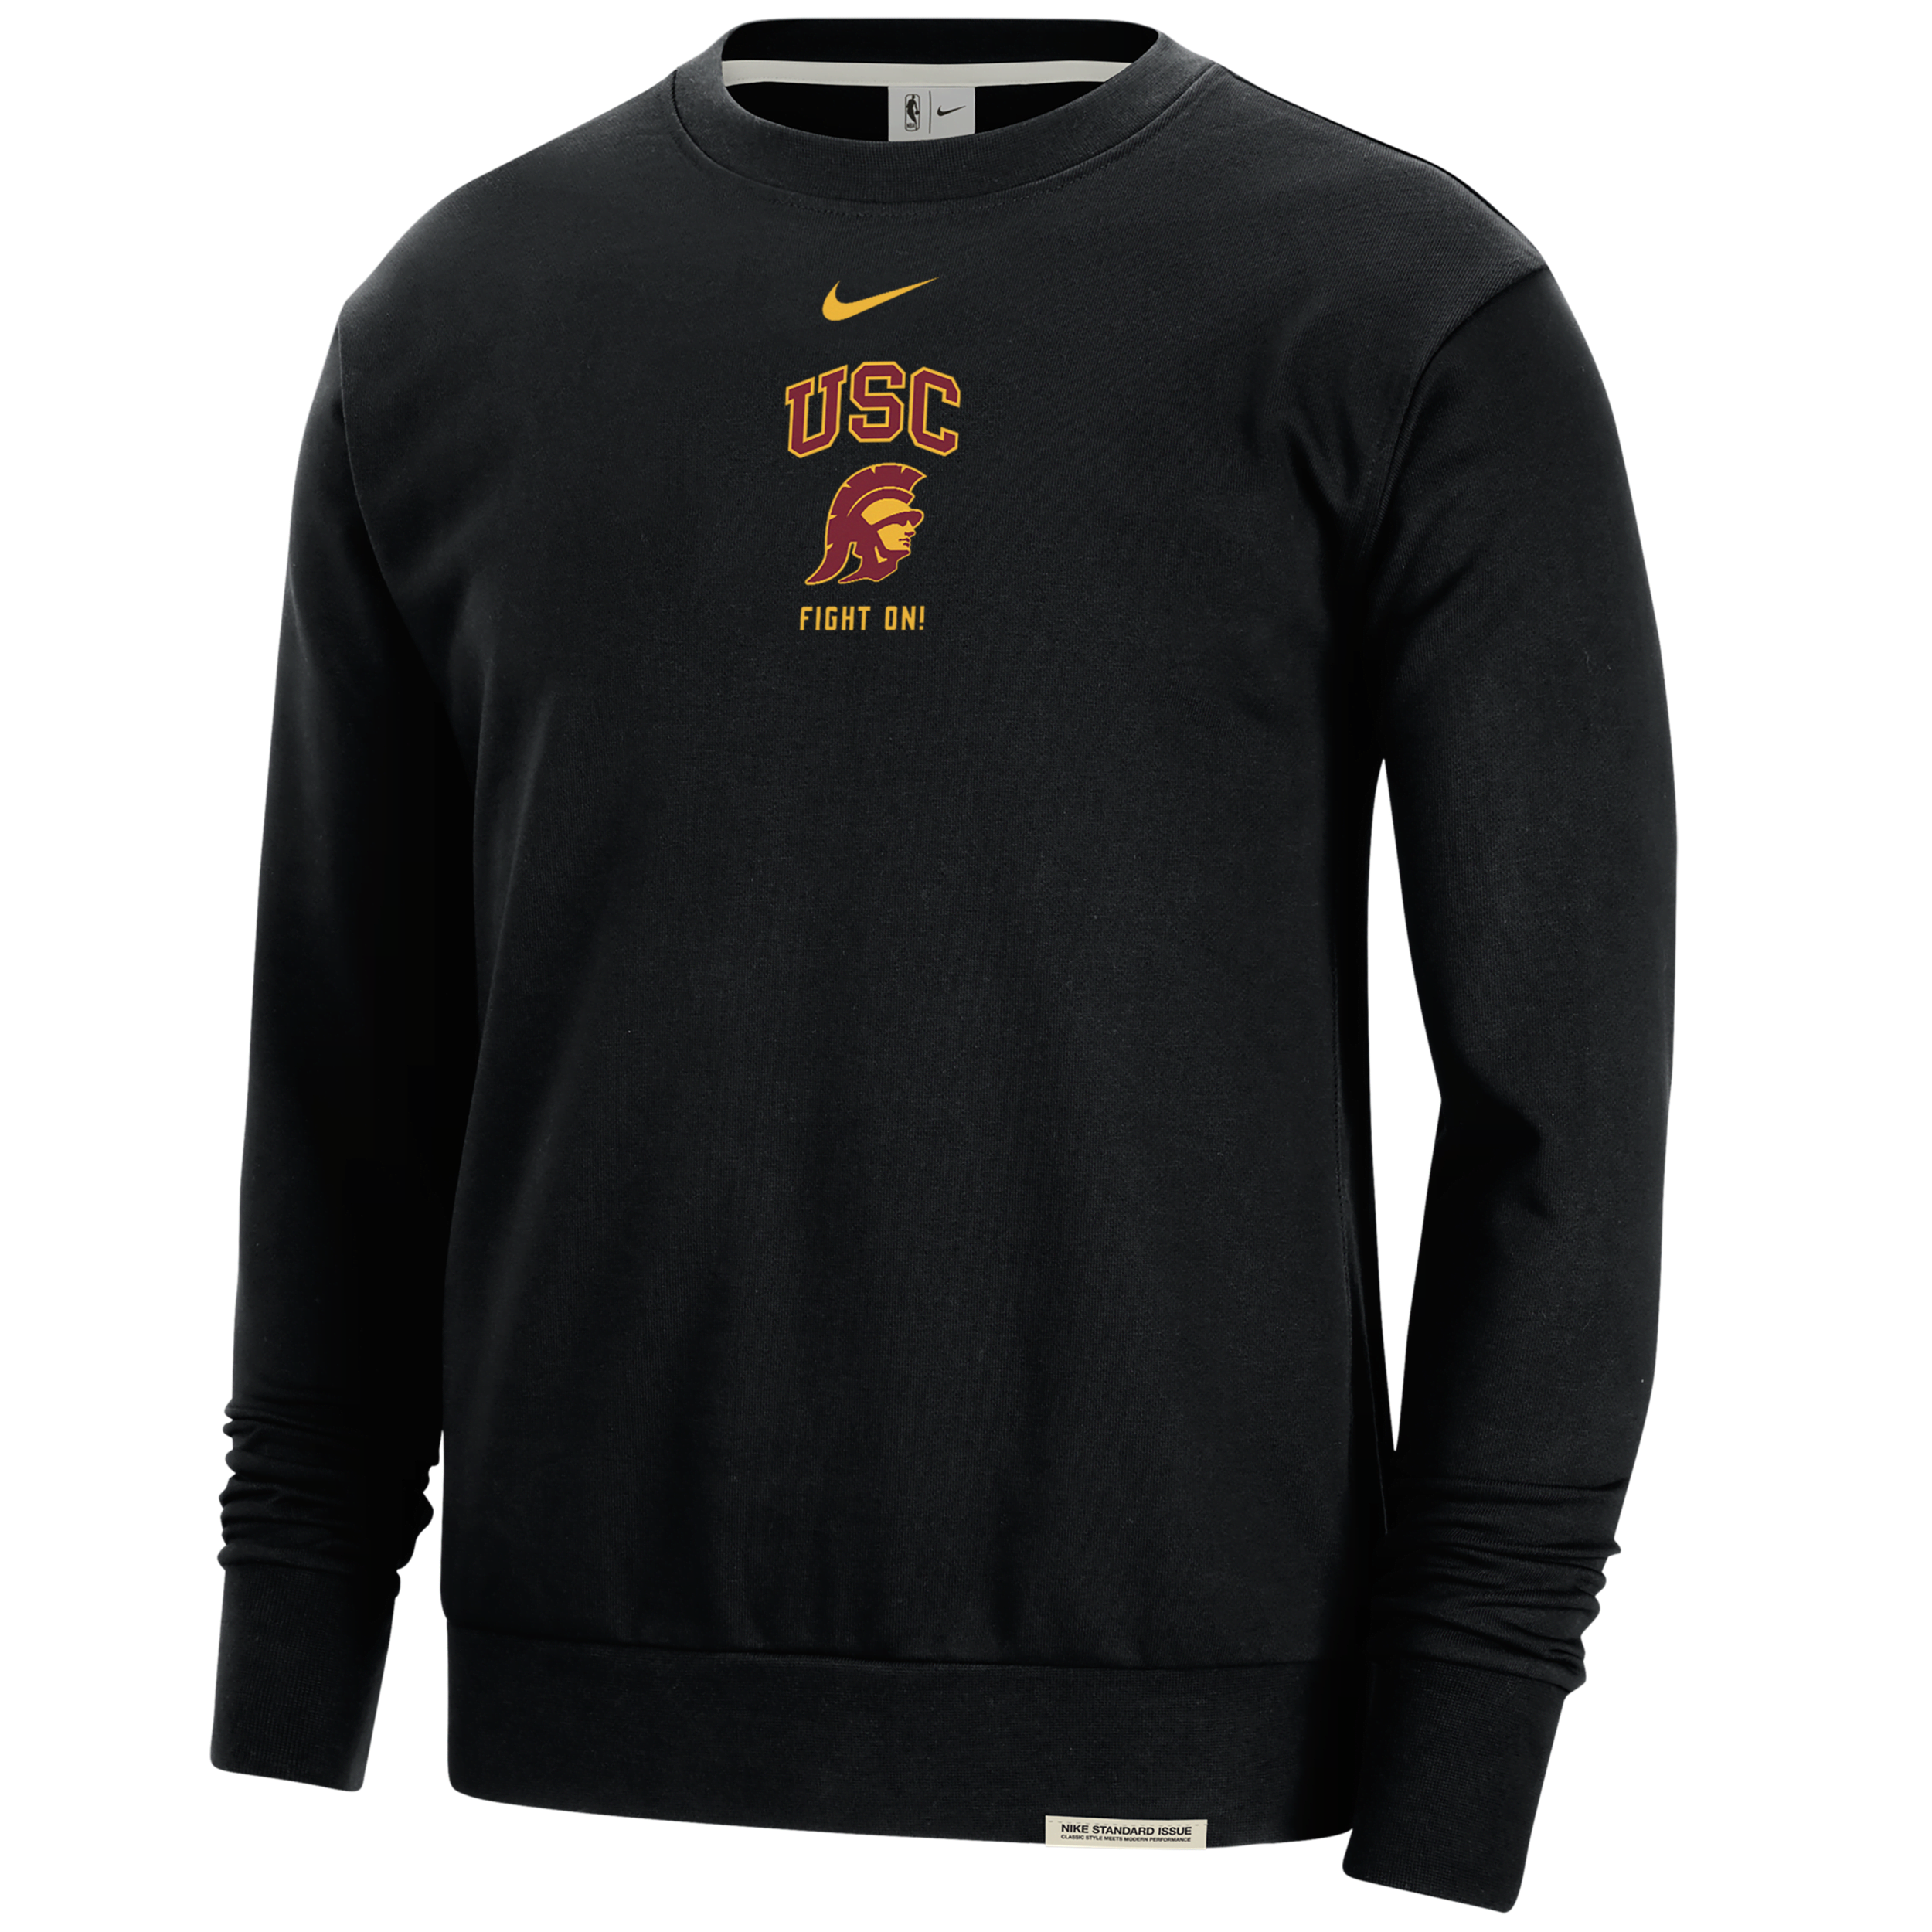 Nike Usc Standard Issue  Men's College Fleece Crew-neck Sweatshirt In Black